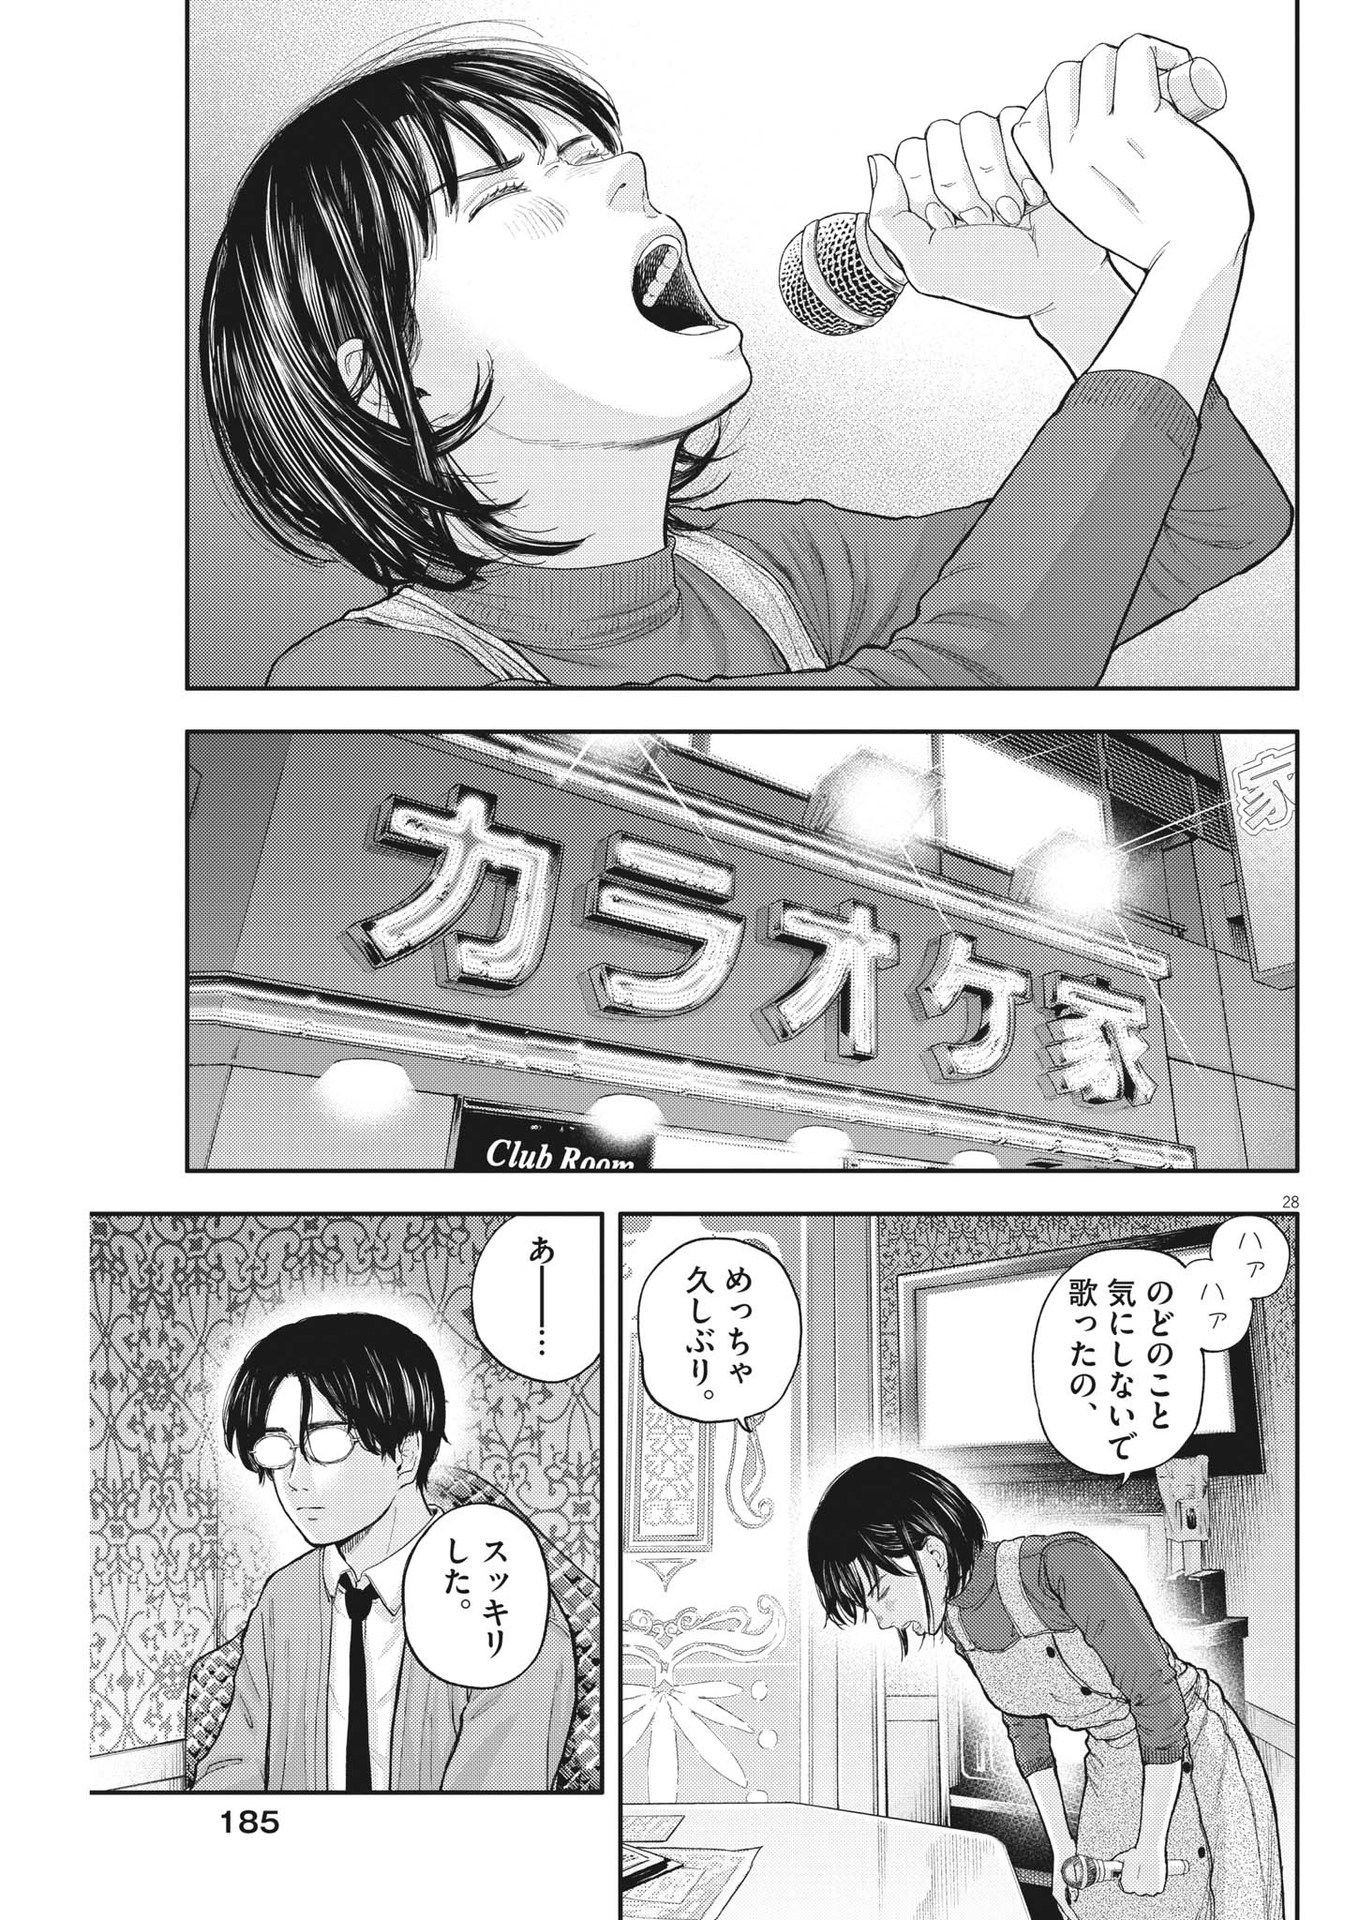 Yumenashi-sensei no Shinroshidou - Chapter 2 - Page 28